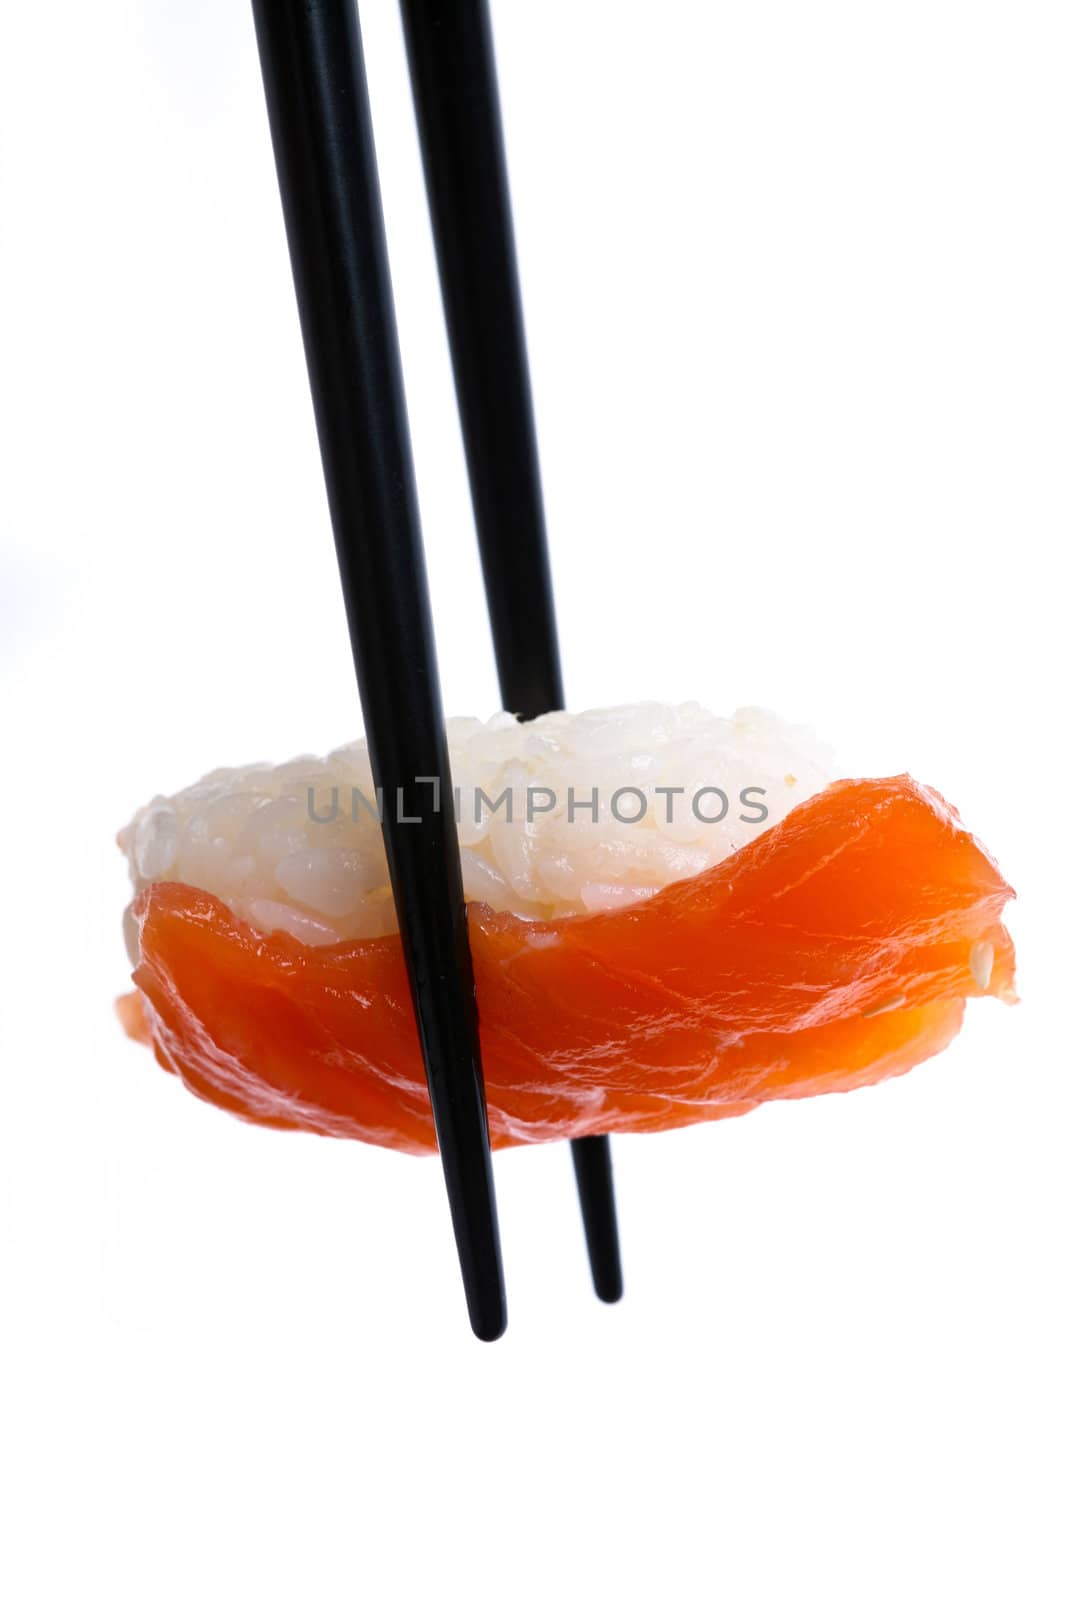 Stock Photo: Sushi with chopsticks shot on white